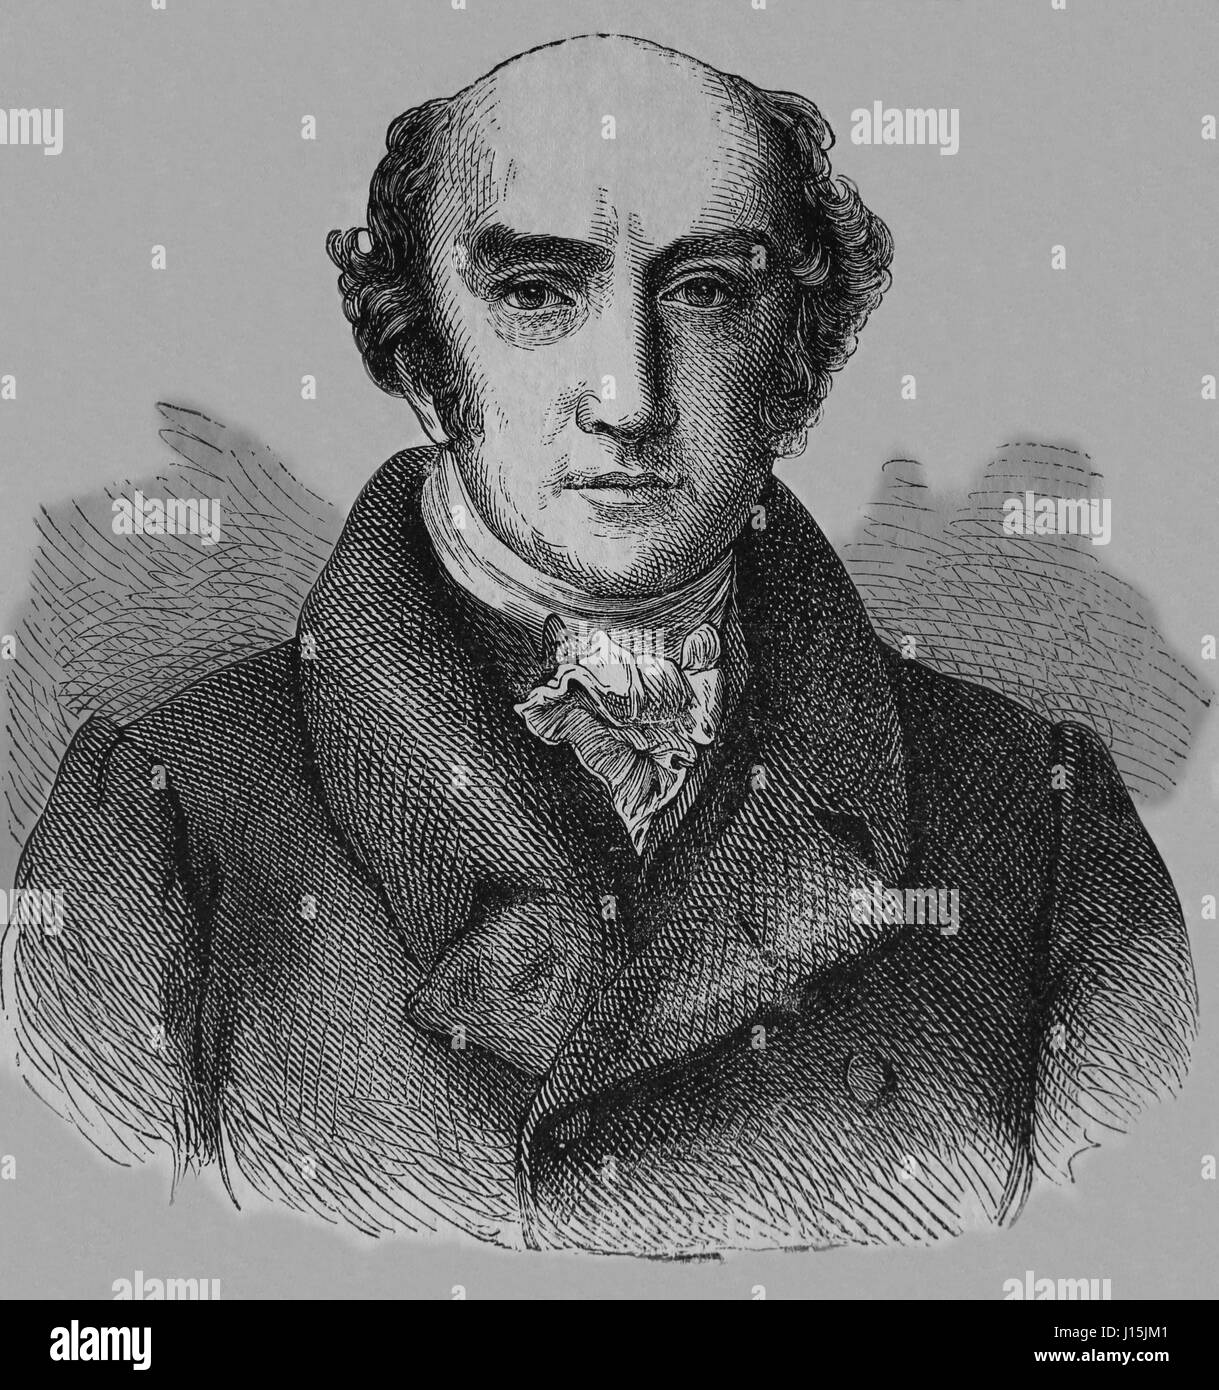 George Canning (1770-1827). Britischer Staatsmann und Tory Politiker. Gravur, Nuestro Siglo, 1883. Stockfoto